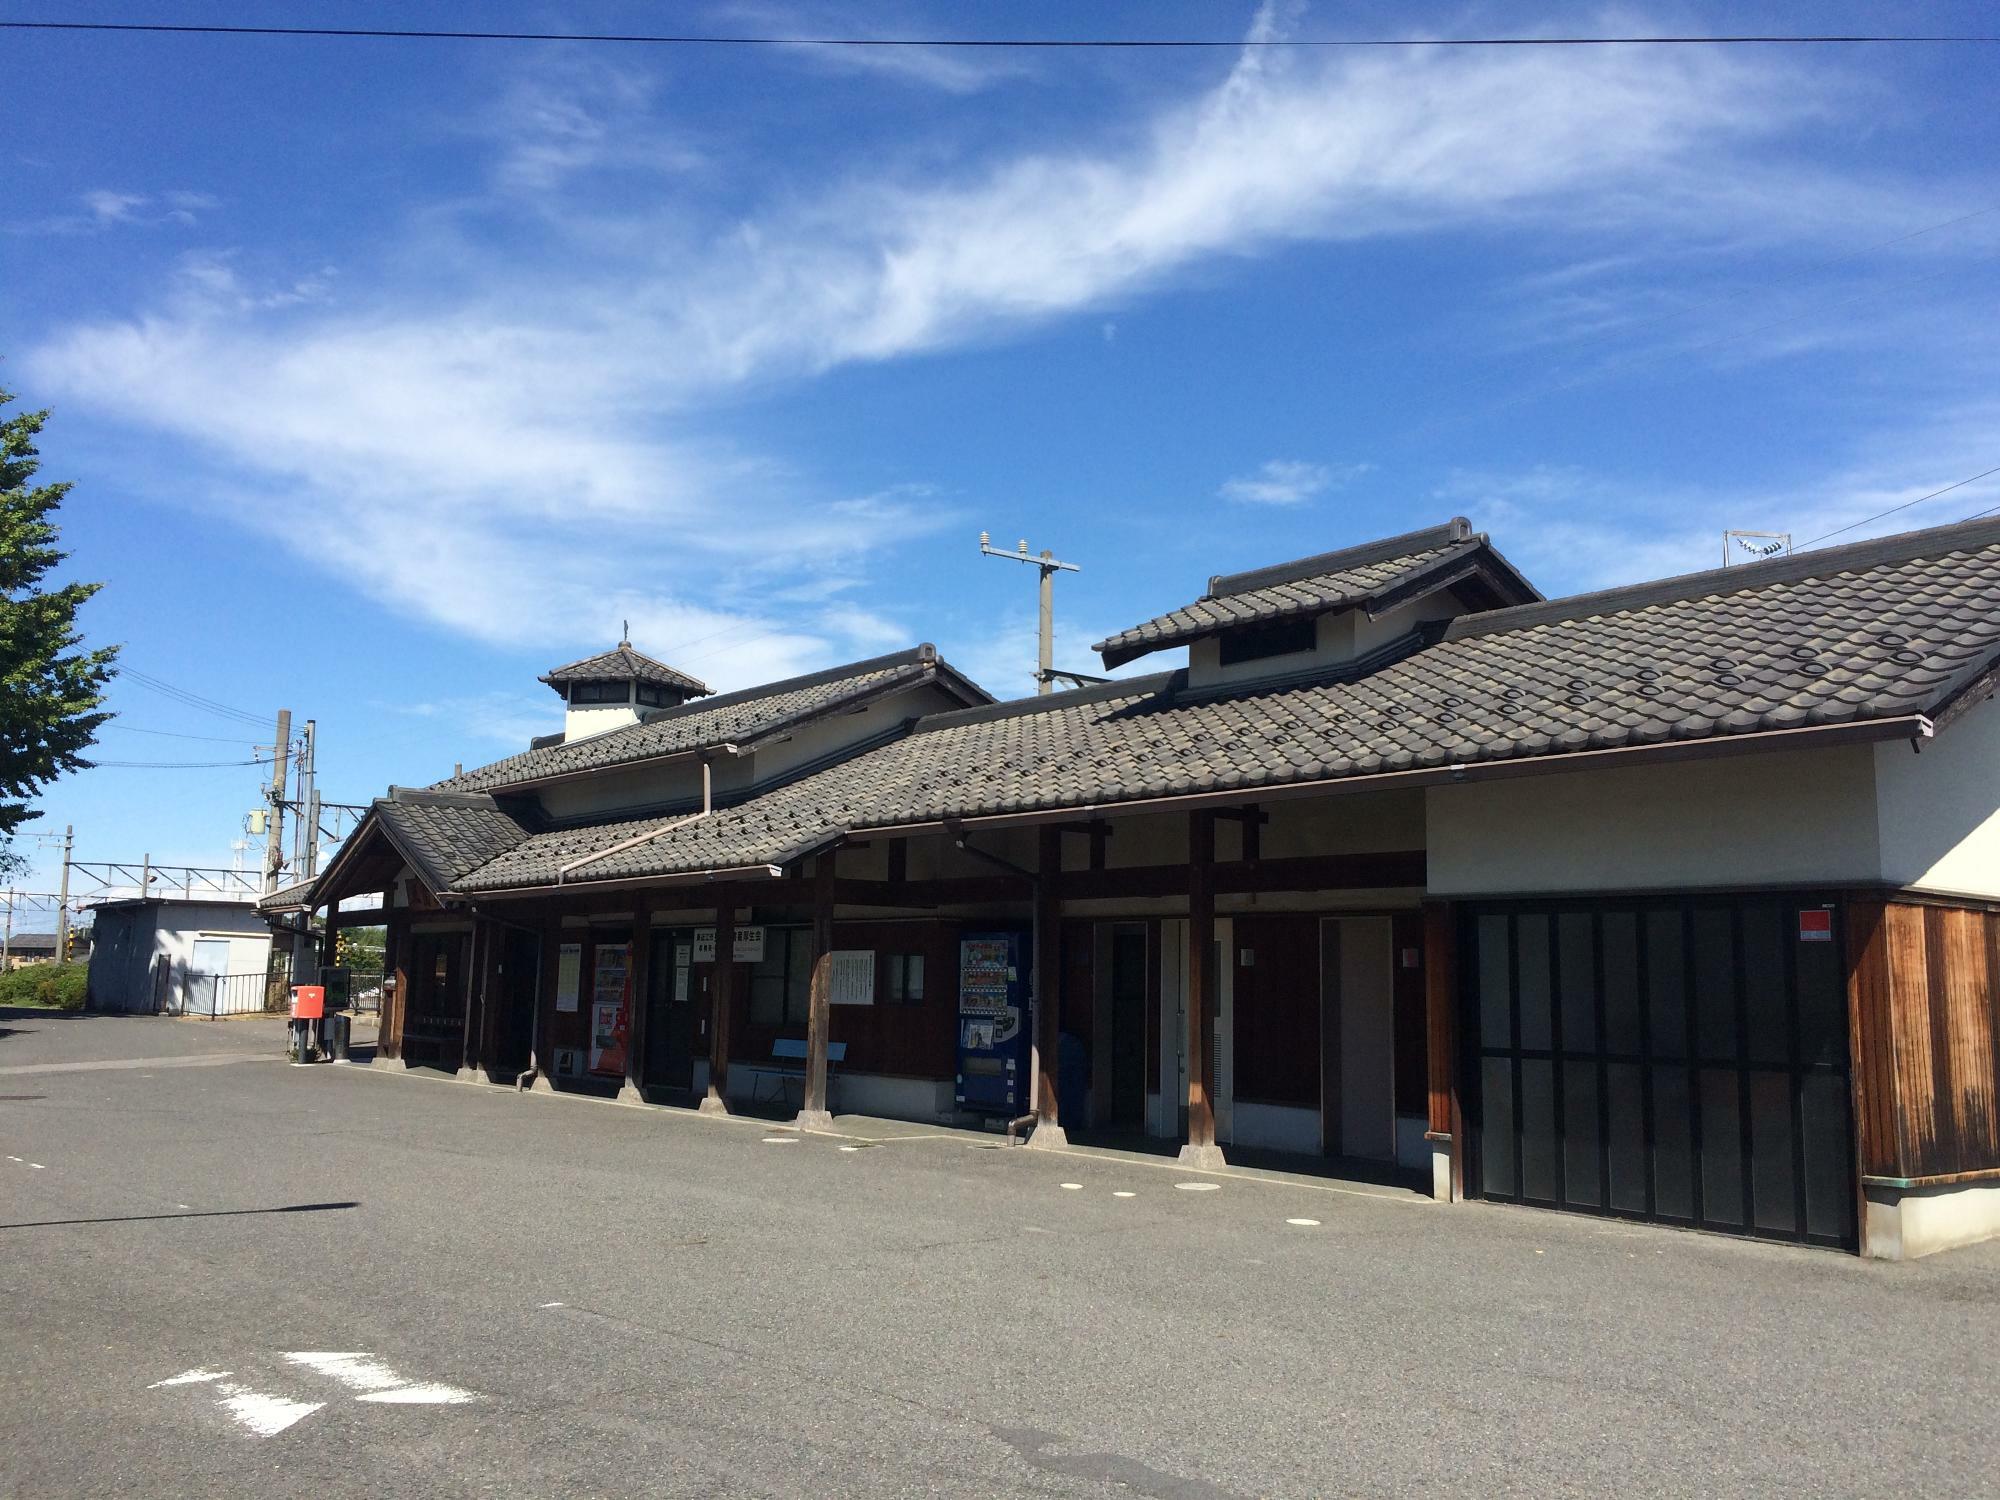 近江鉄道五箇荘駅は、自転車と一緒に乗車可能なサイクルトレイン対応の駅でもありますので、体調や時間に合わせてショートカットに利用するのもよいかと思われます